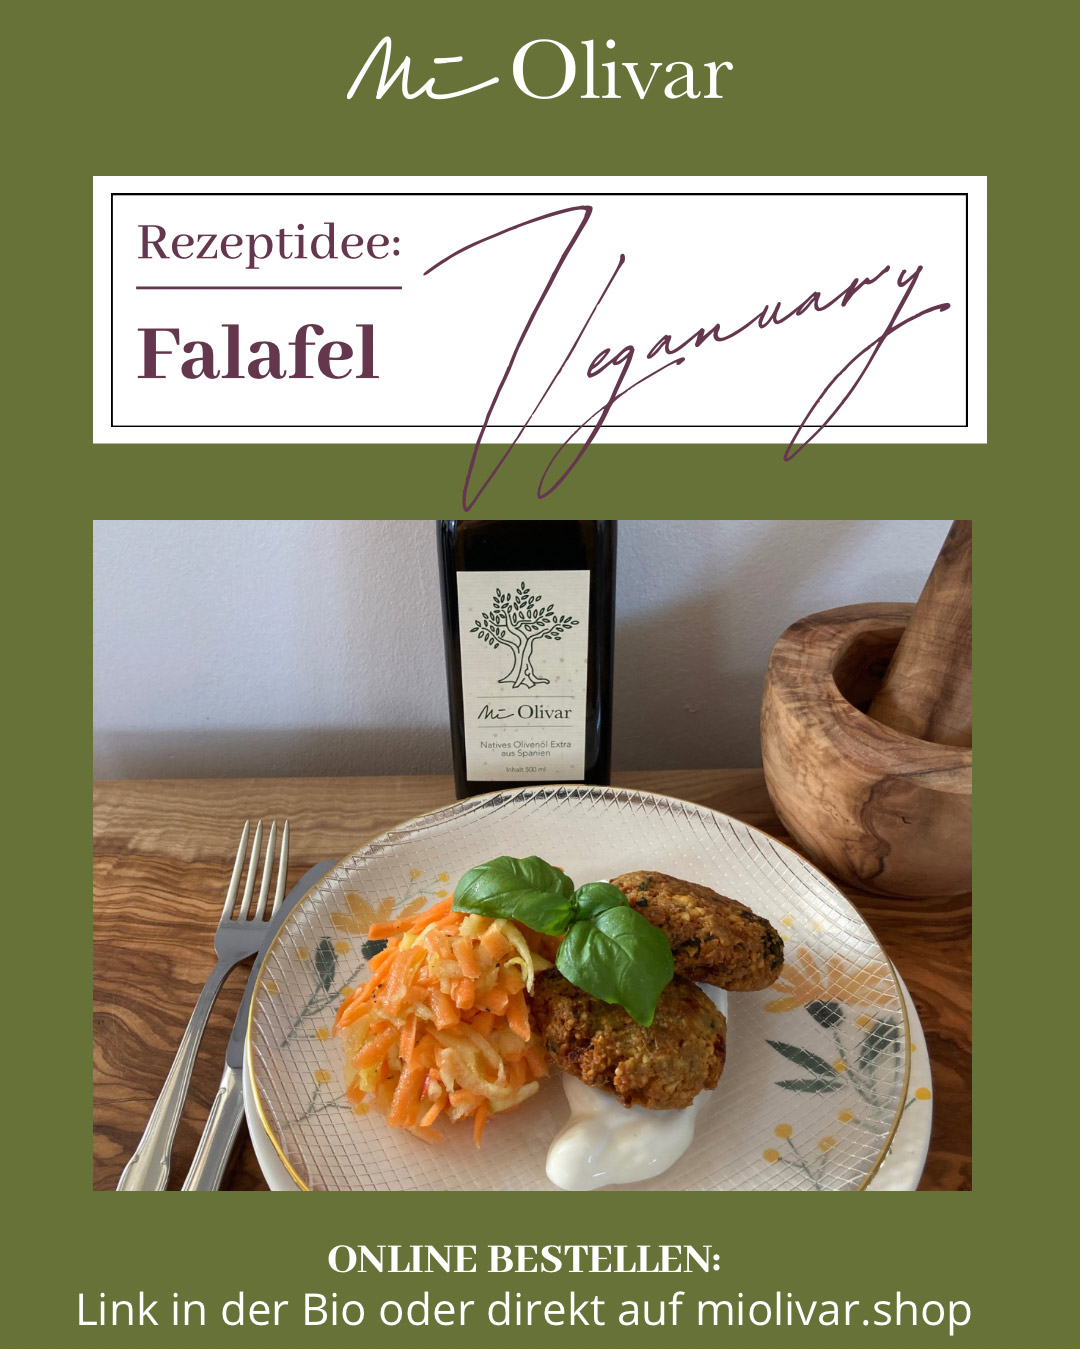 You are currently viewing Veganuary Genuss: Einfaches Falafel Rezept – Falafel selber machen mit Spanischem Olivenöl von Mi Olivar